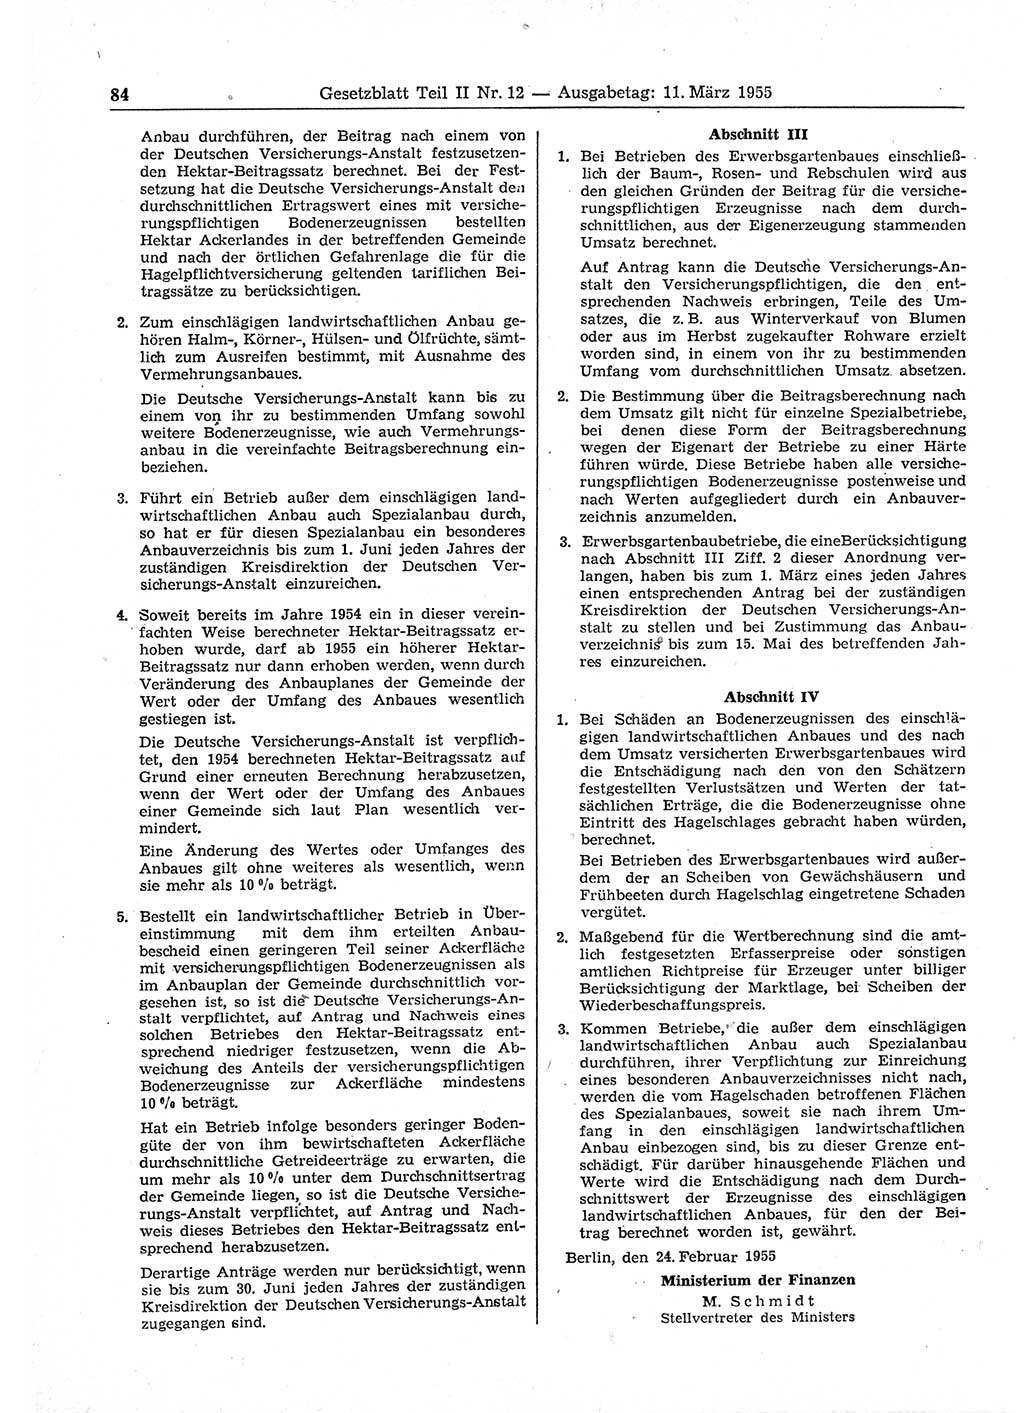 Gesetzblatt (GBl.) der Deutschen Demokratischen Republik (DDR) Teil ⅠⅠ 1955, Seite 84 (GBl. DDR ⅠⅠ 1955, S. 84)